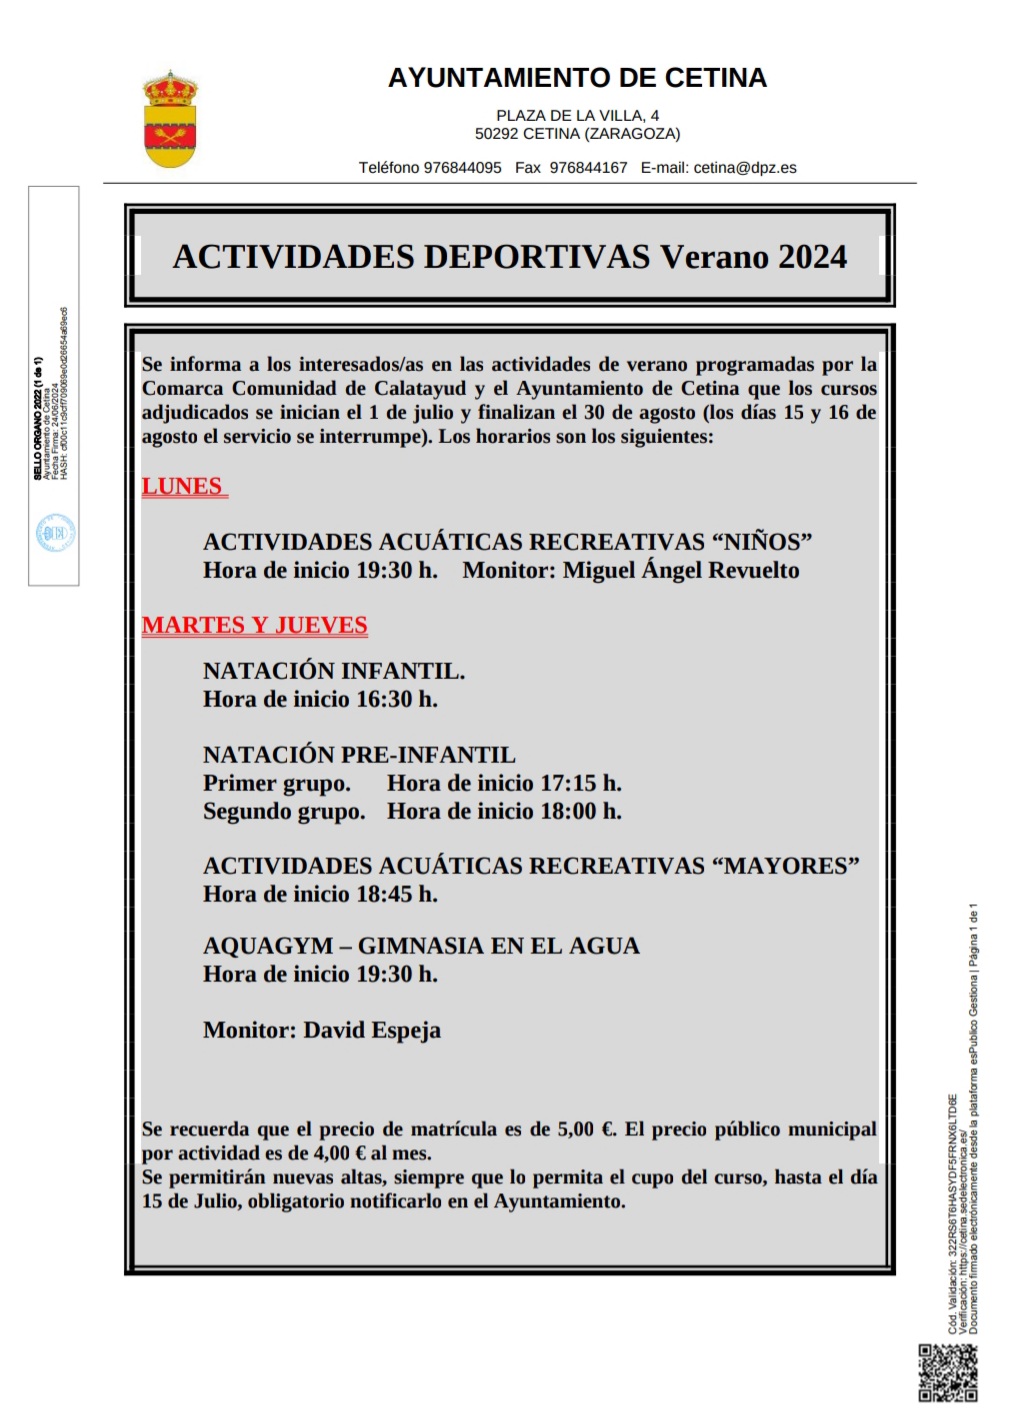 HORARIO ACTIVIDADES DEPORTIVAS VERANO 2024